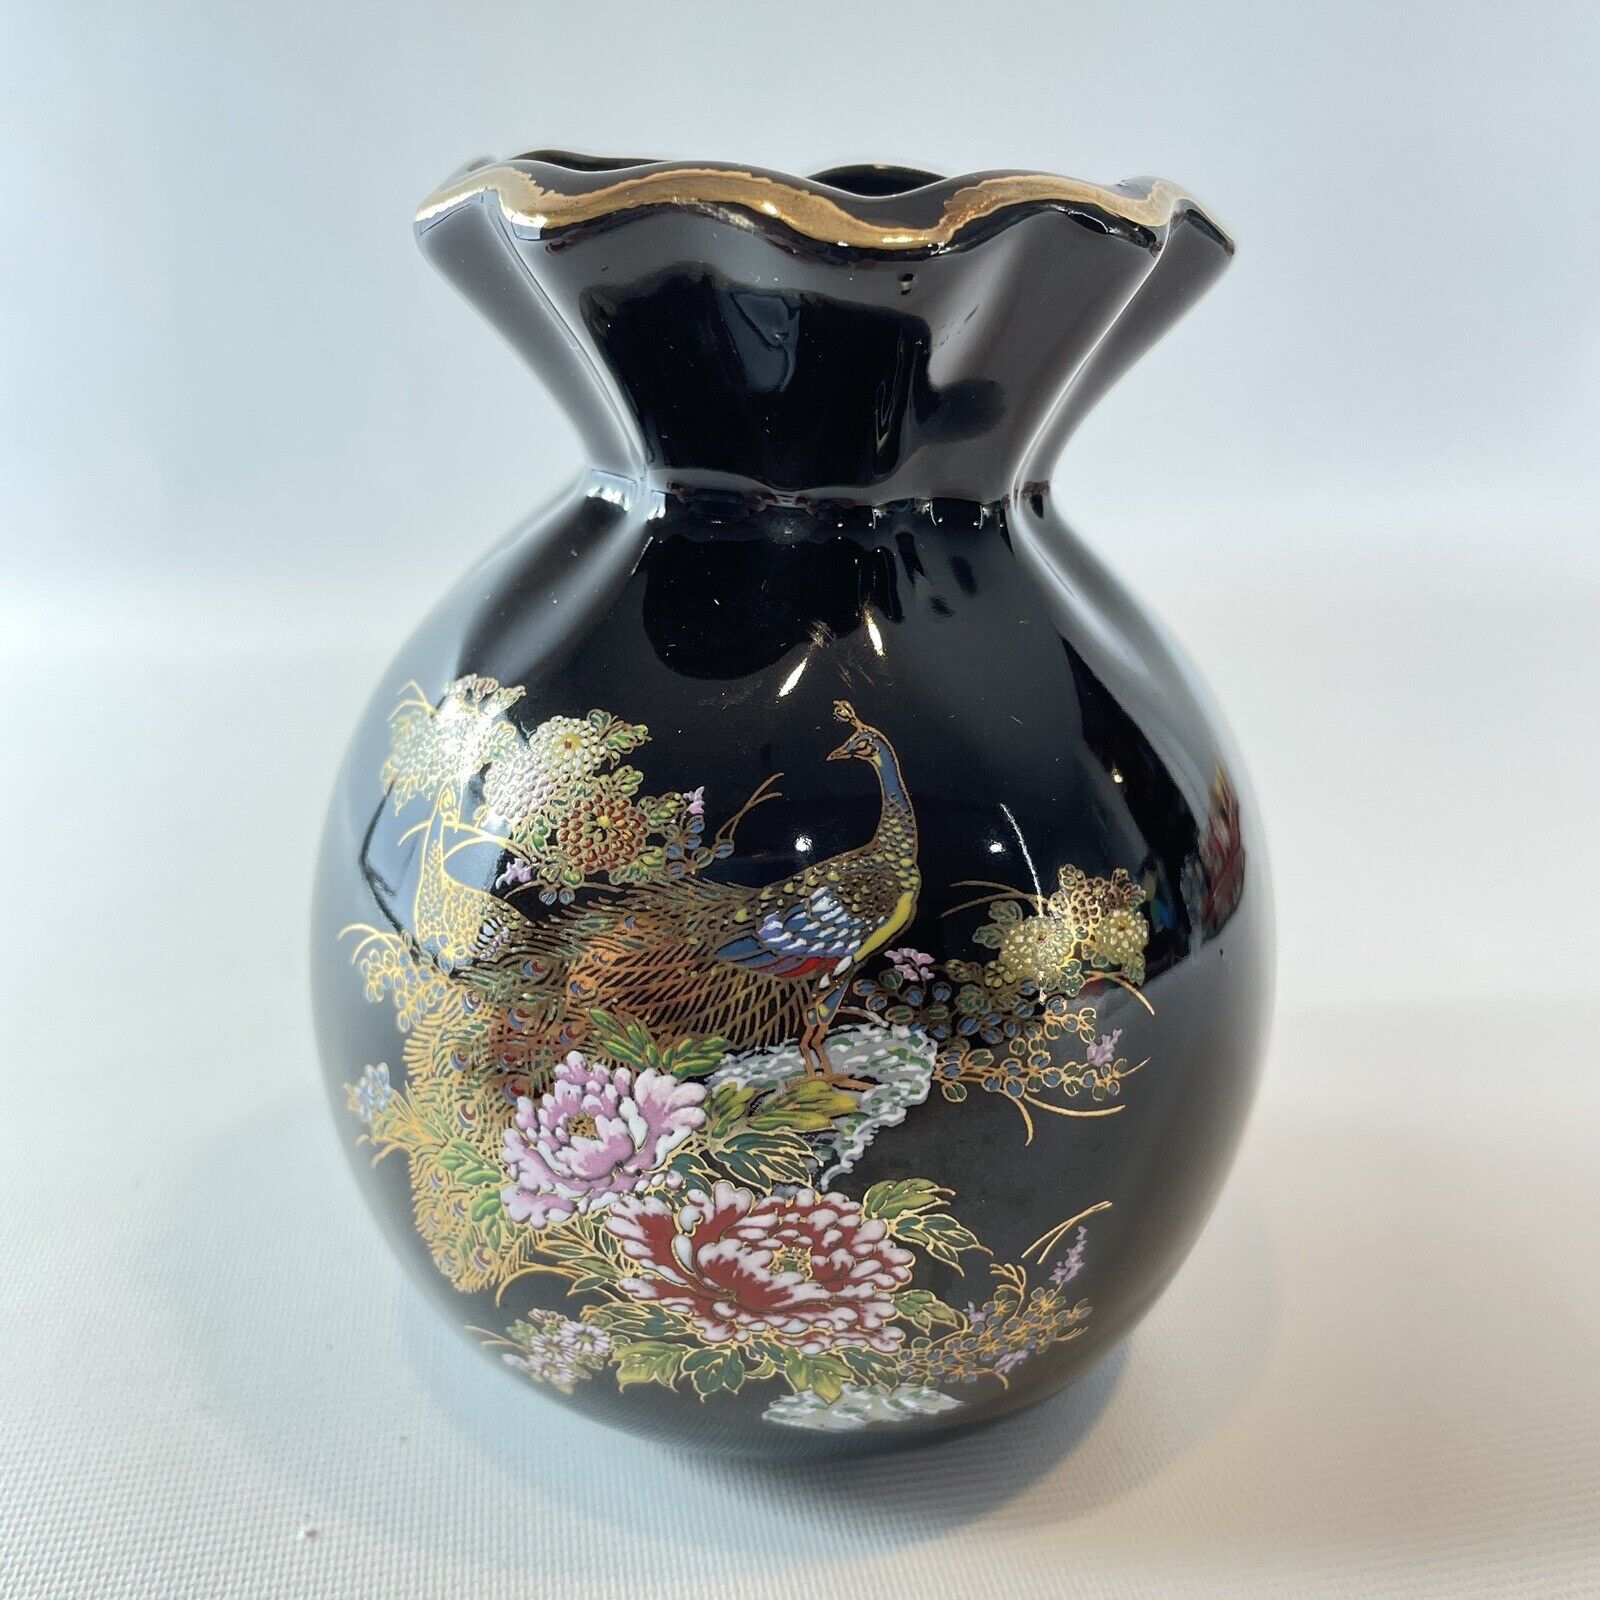 Vintage Black Small Vase Peacock Floral Design Gold Trim Pottery Japan